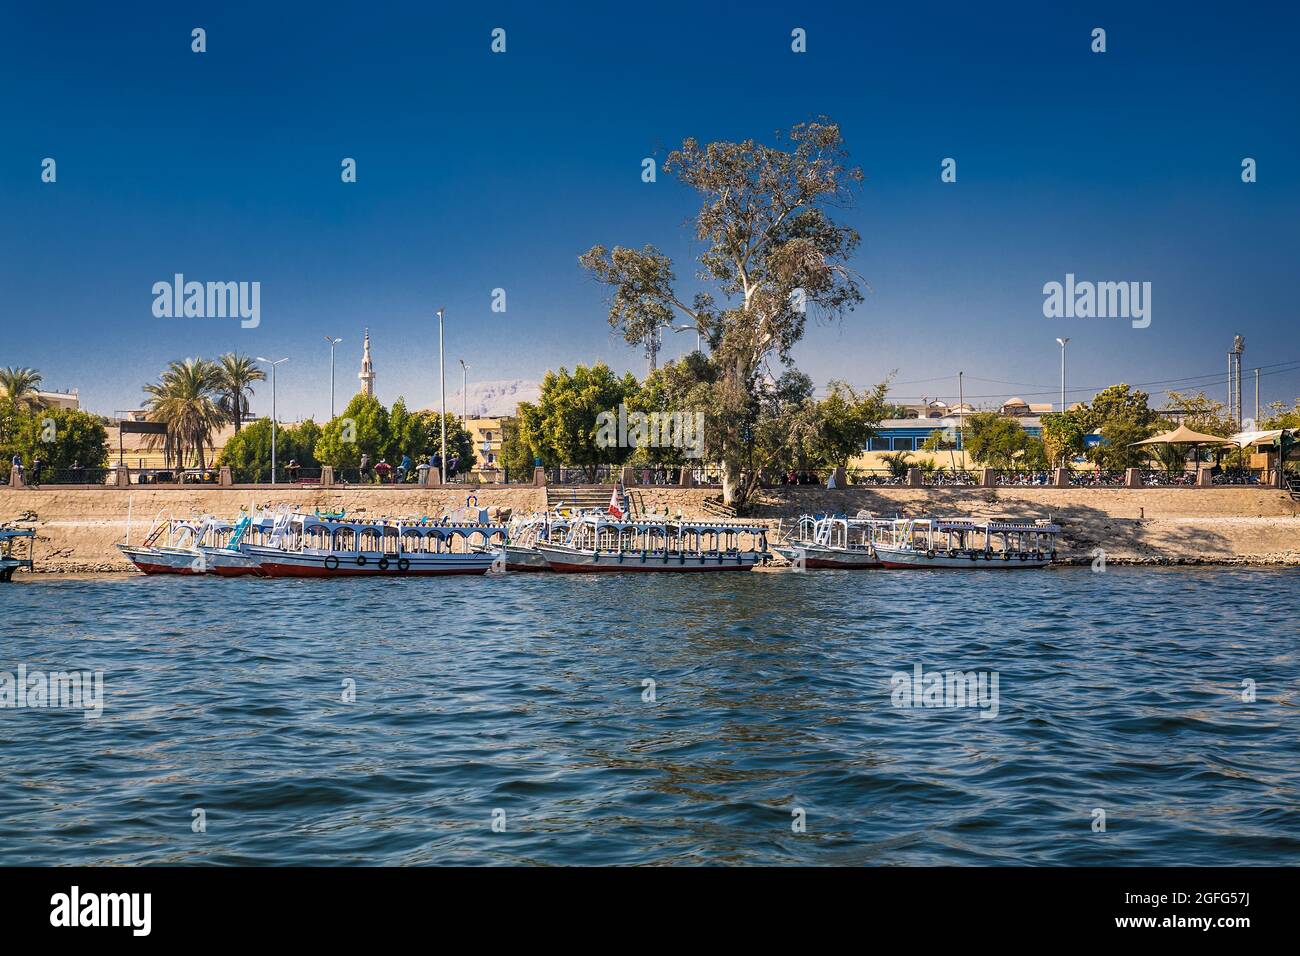 Luxor, Ägypten - Jan 28, 2020:die touristischen Boote auf dem Nil in Luxor, Ägypten Stockfoto